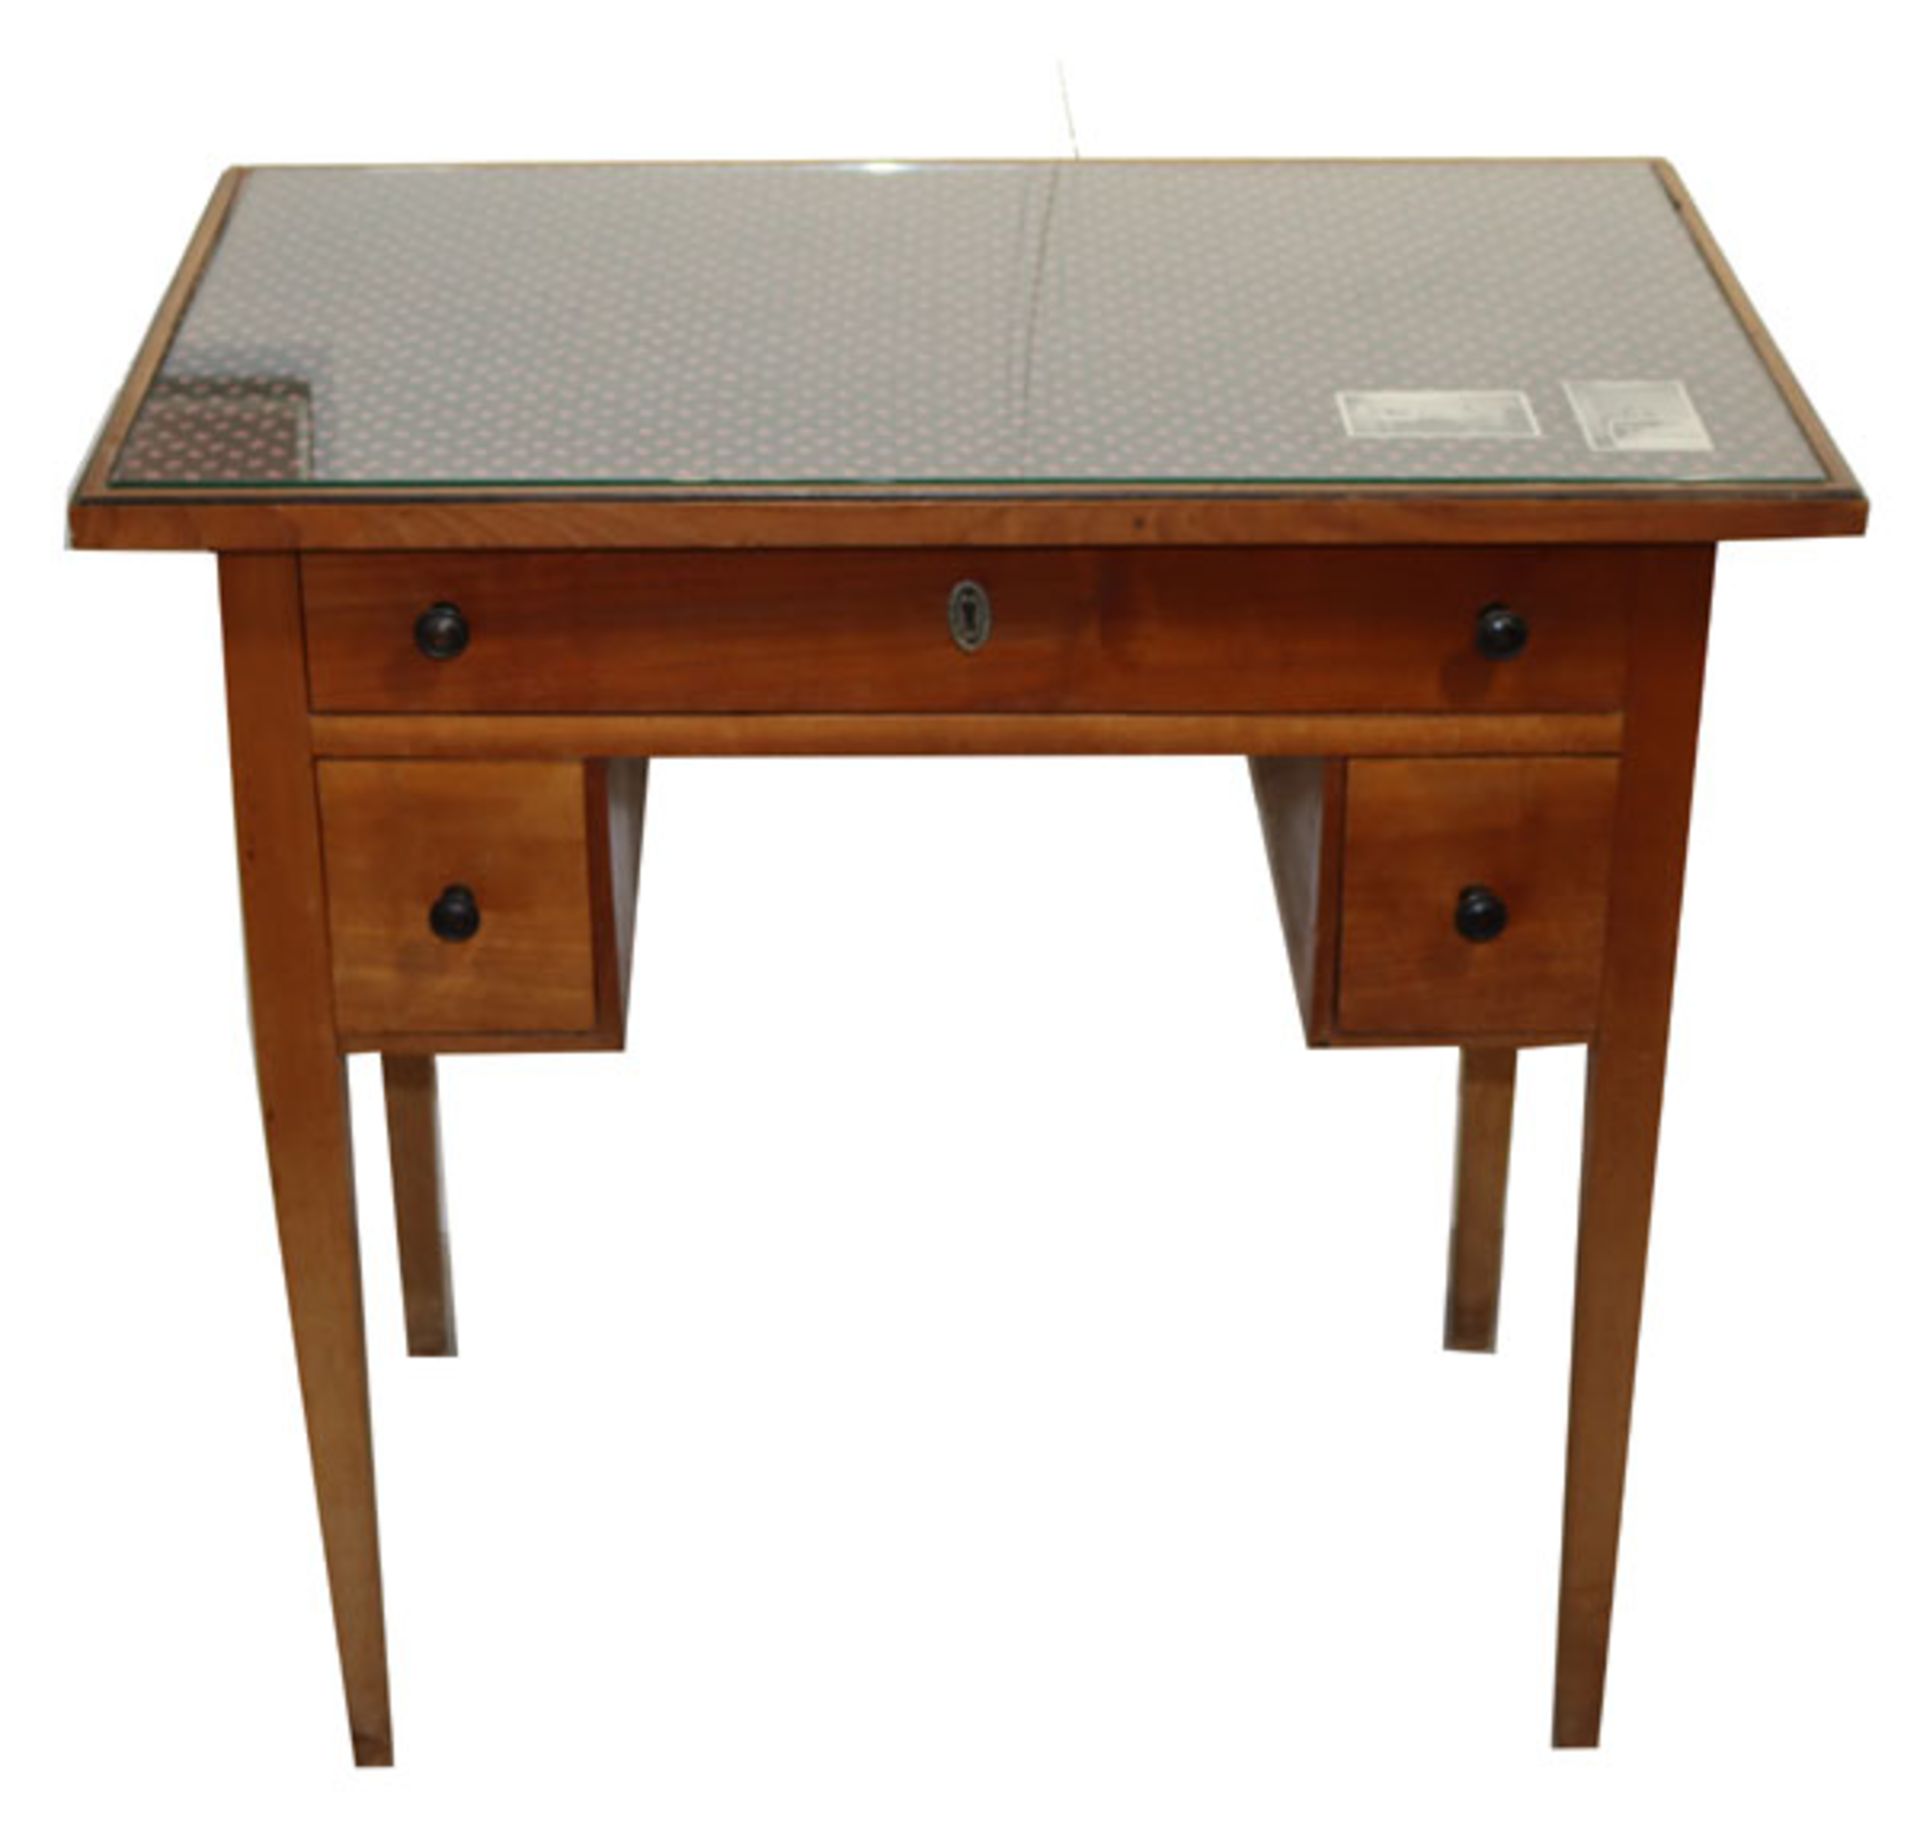 Schreibtisch, Korpus mit 3 Schüben, Glasplatte, H 75 cm, B 80 cm, T 51 cm, Alters- und